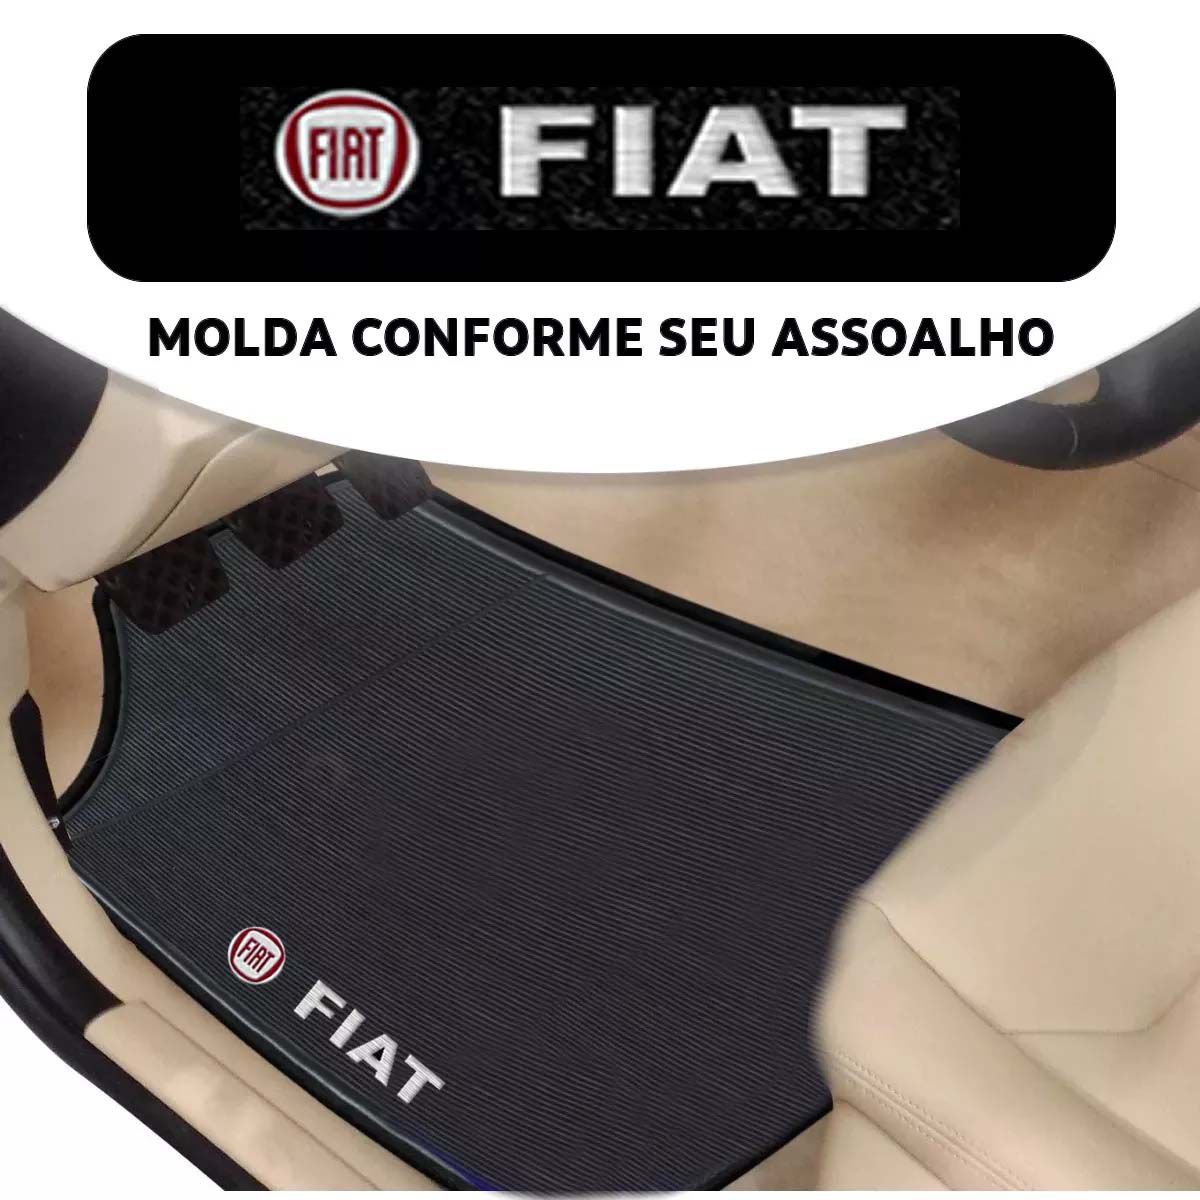 Tapete Borracha Fiat Palio Uno Siena Strada Todos Fiat Poliparts